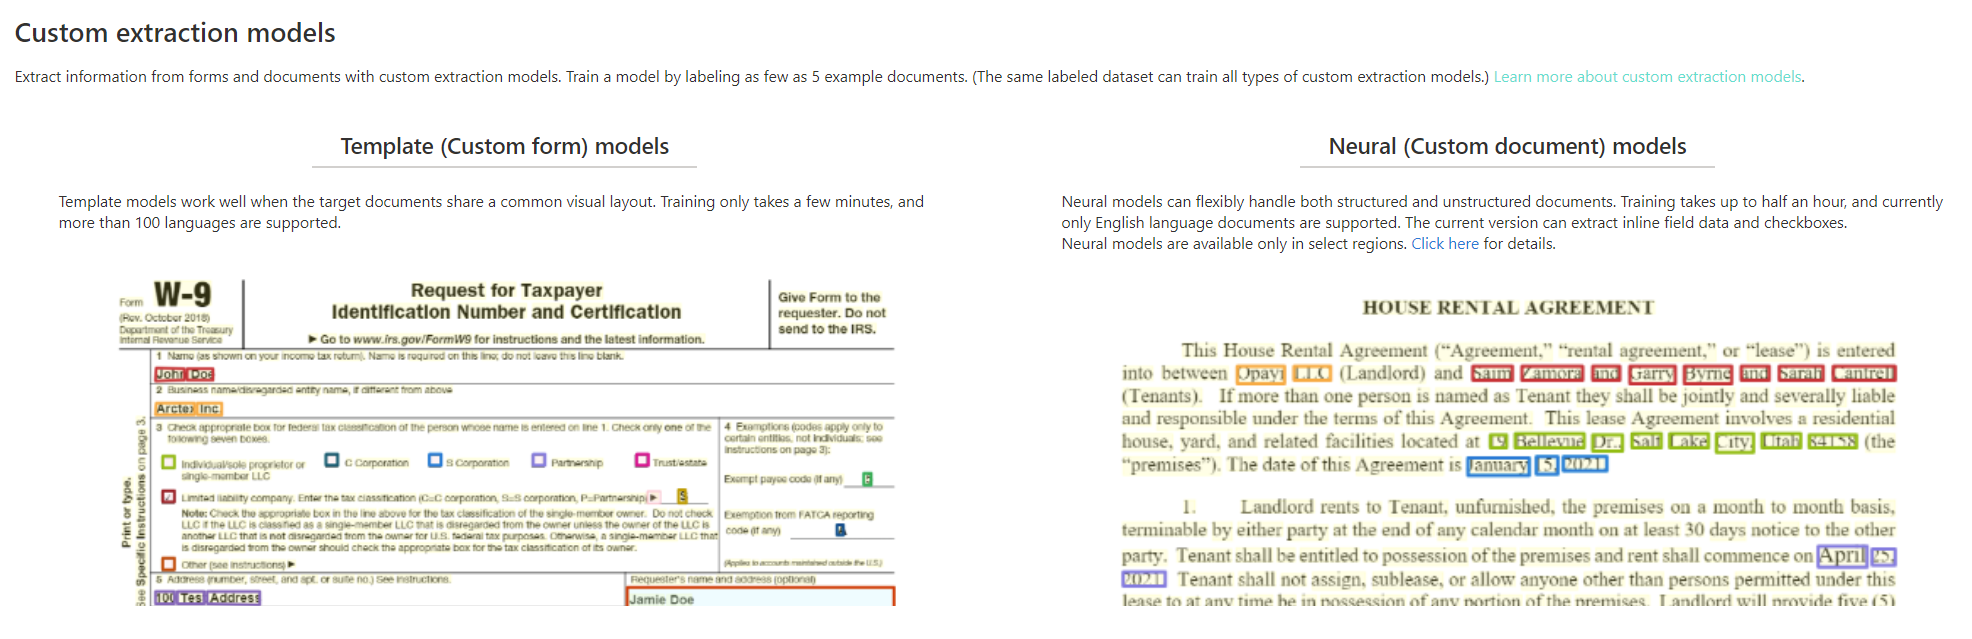 Képernyőkép az egyéni kinyerési modell elemzéséről a Document Intelligence Studióban.